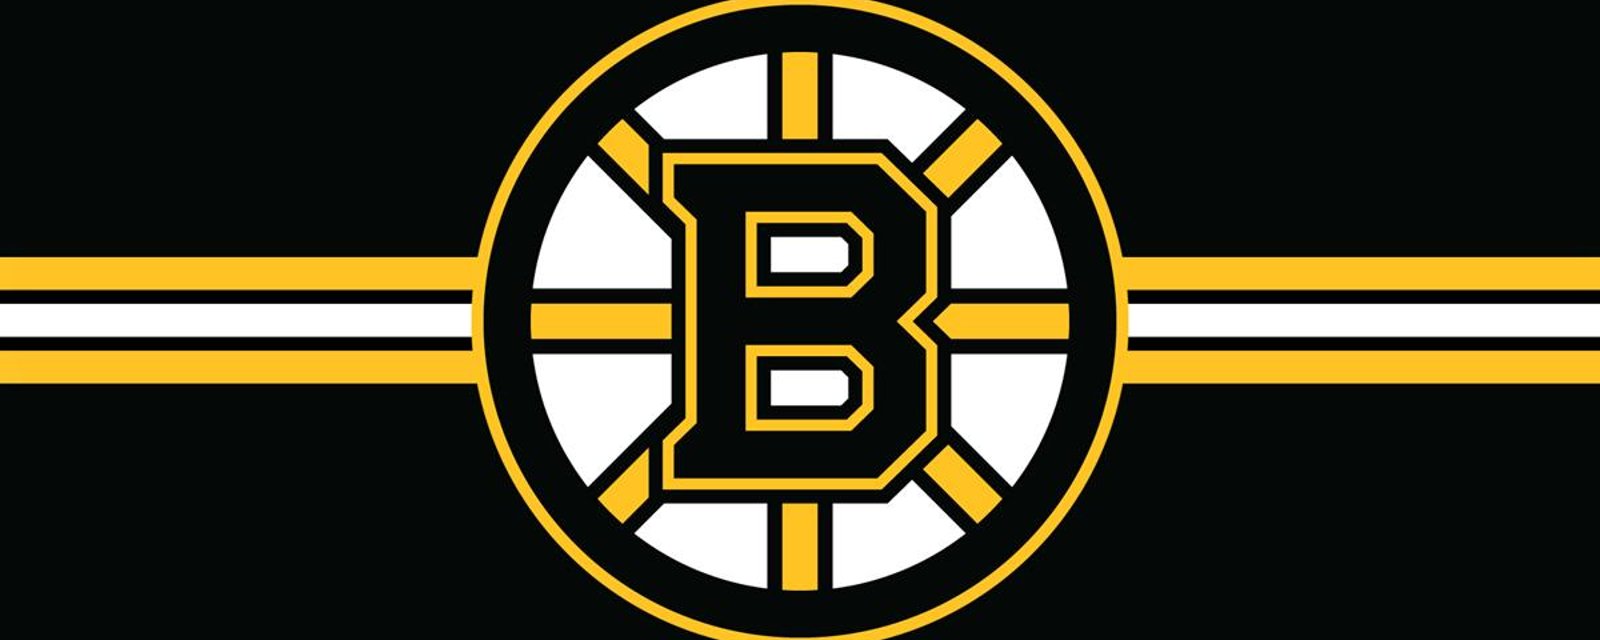 BREAKING : Bruins recall goalie on emergency basis. 